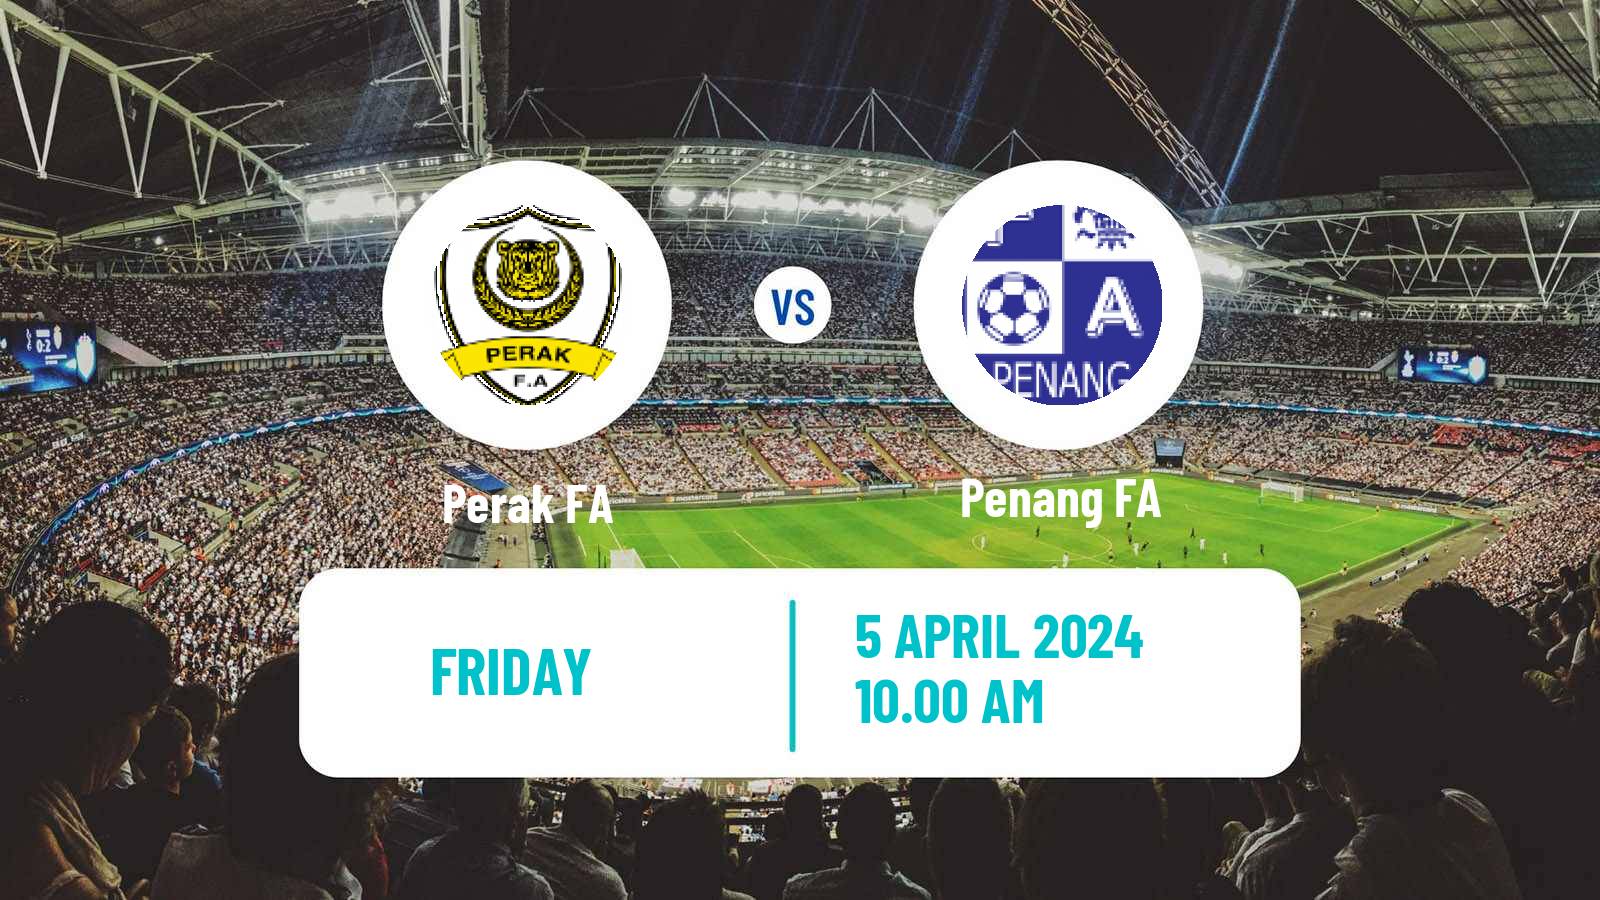 Soccer Club Friendly Perak FA - Penang